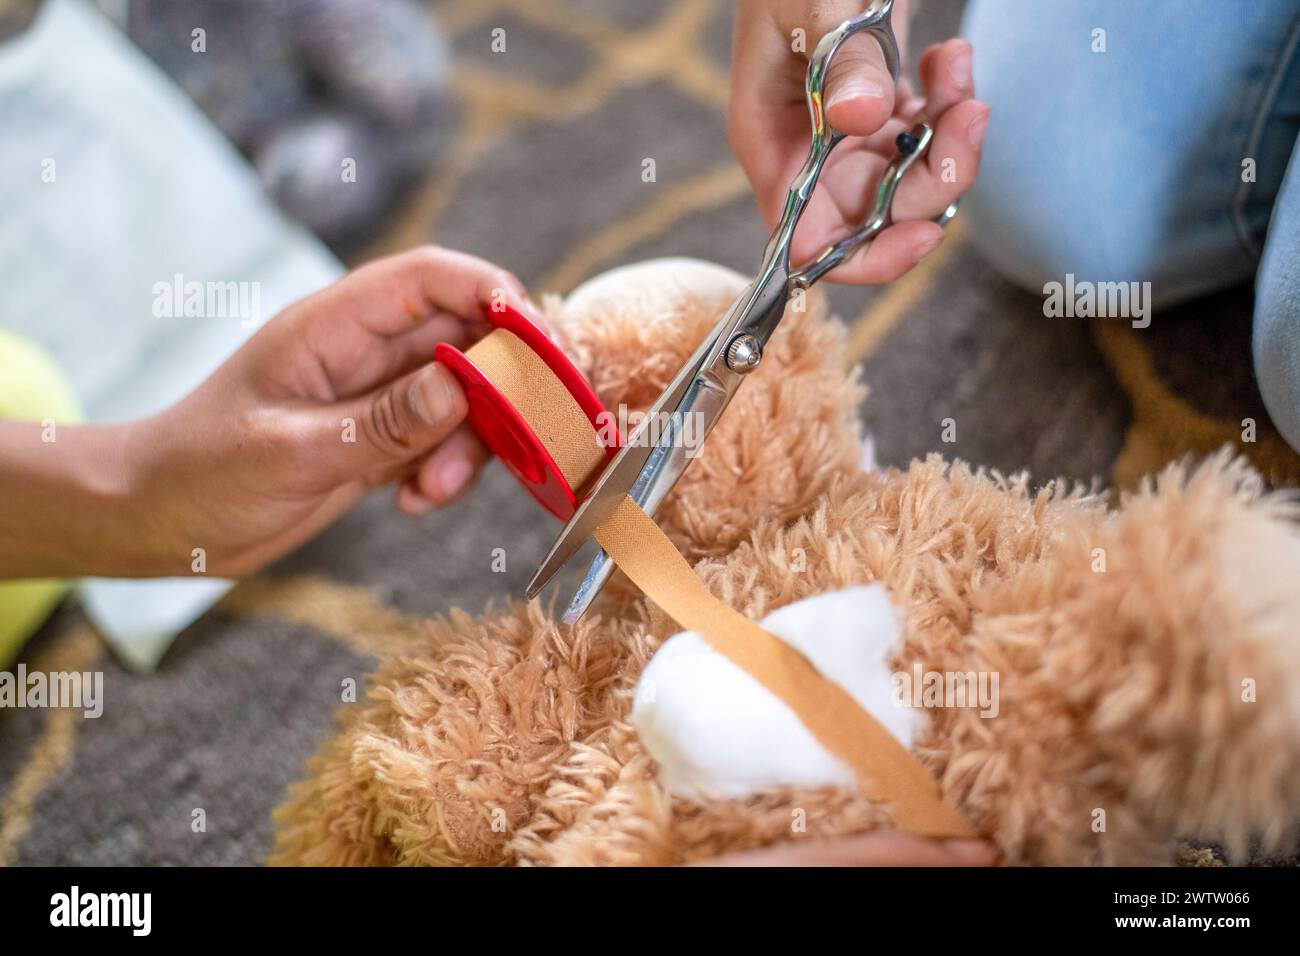 Hände schneiden während der Bastelzeit vorsichtig ein rotes Band an einem Teddybären ab Stockfoto